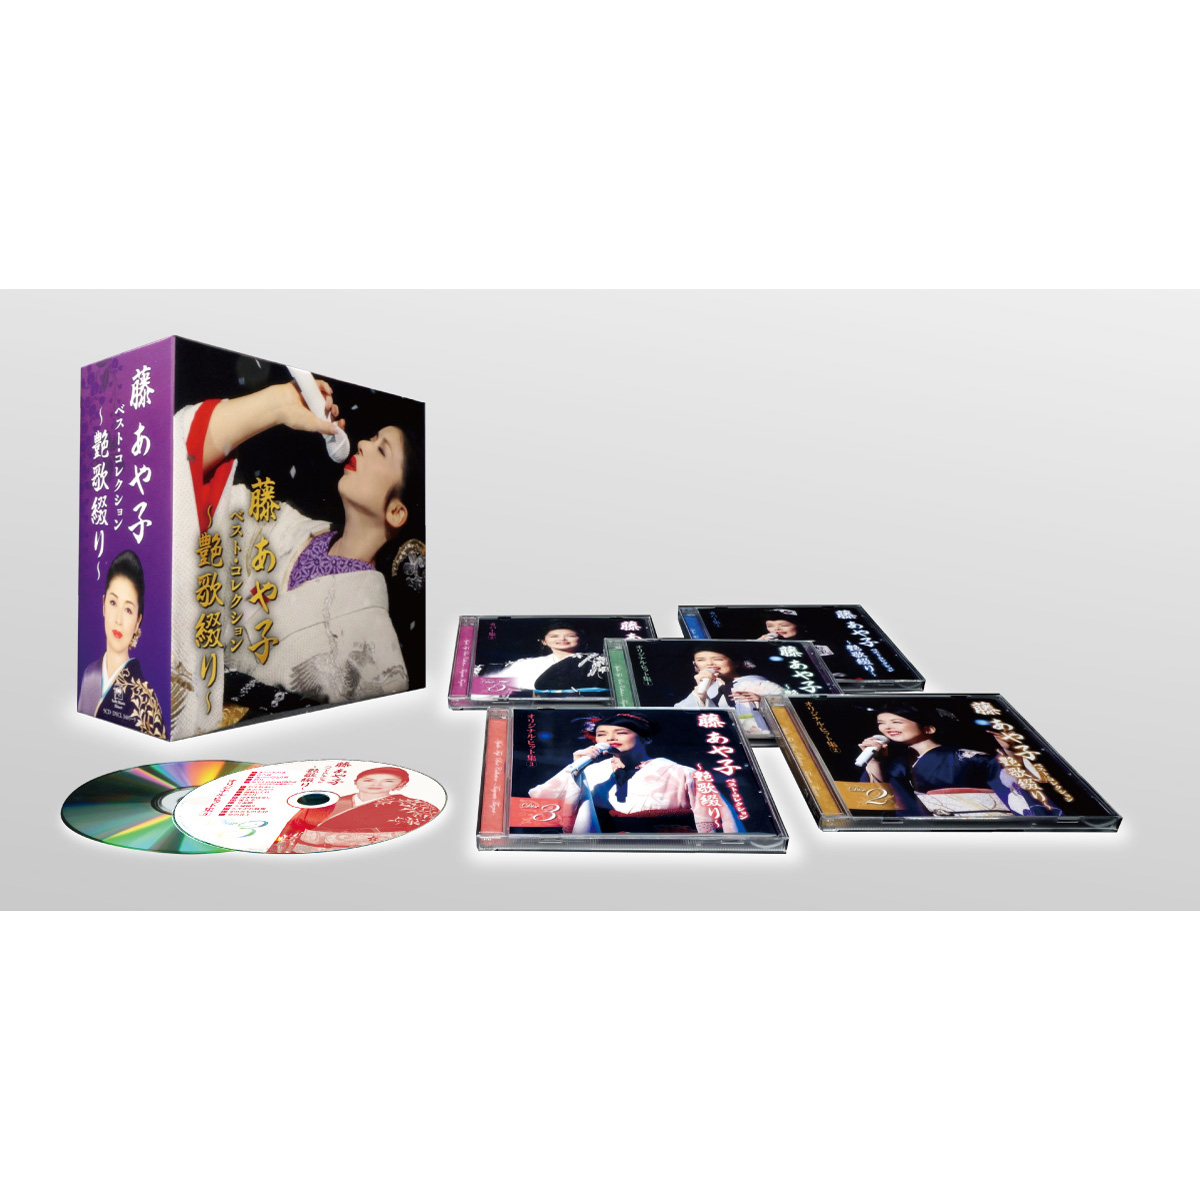 ■【CD】藤あや子 ベスト・コレクション~艶歌綴り~ 5枚組